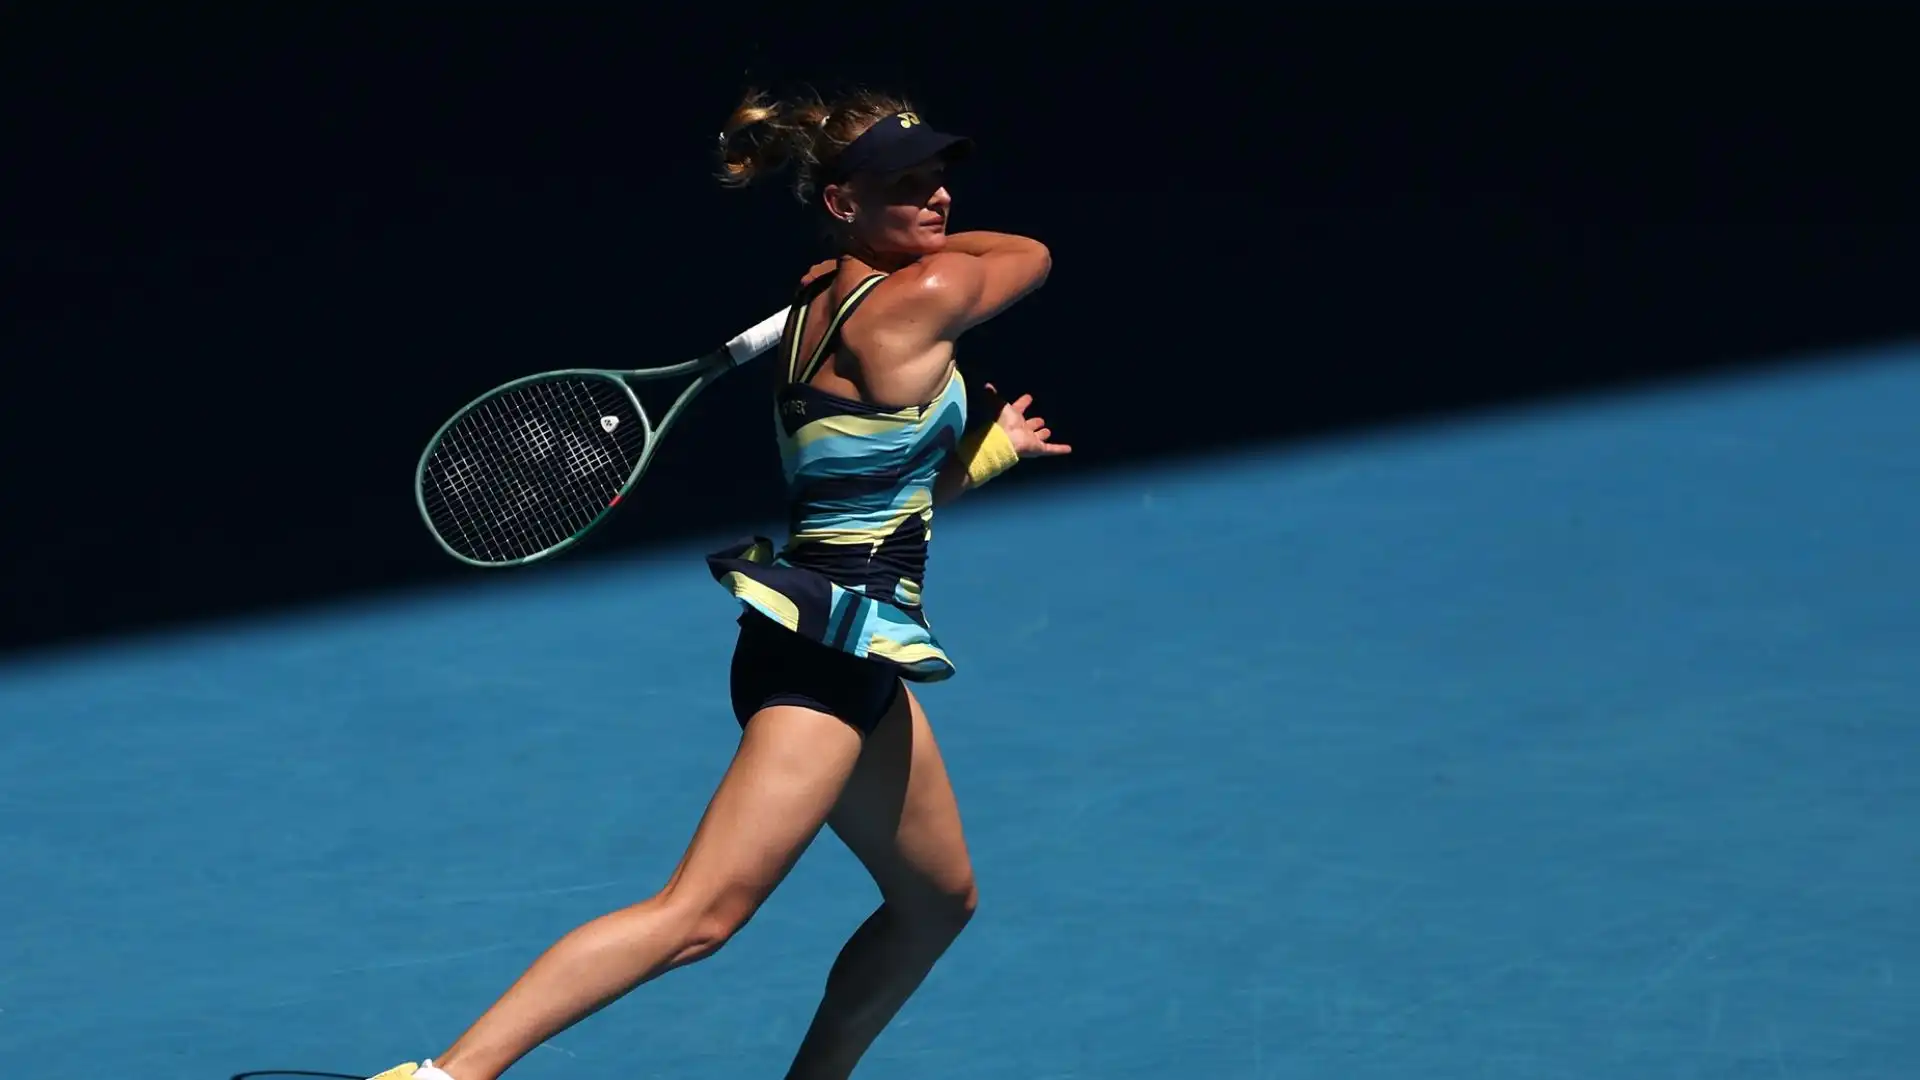 L'atleta ucraina è la seconda tennista della storia a raggiungere le semifinali del torneo del Grande Slam di Melbourne partendo dalle qualificazioni